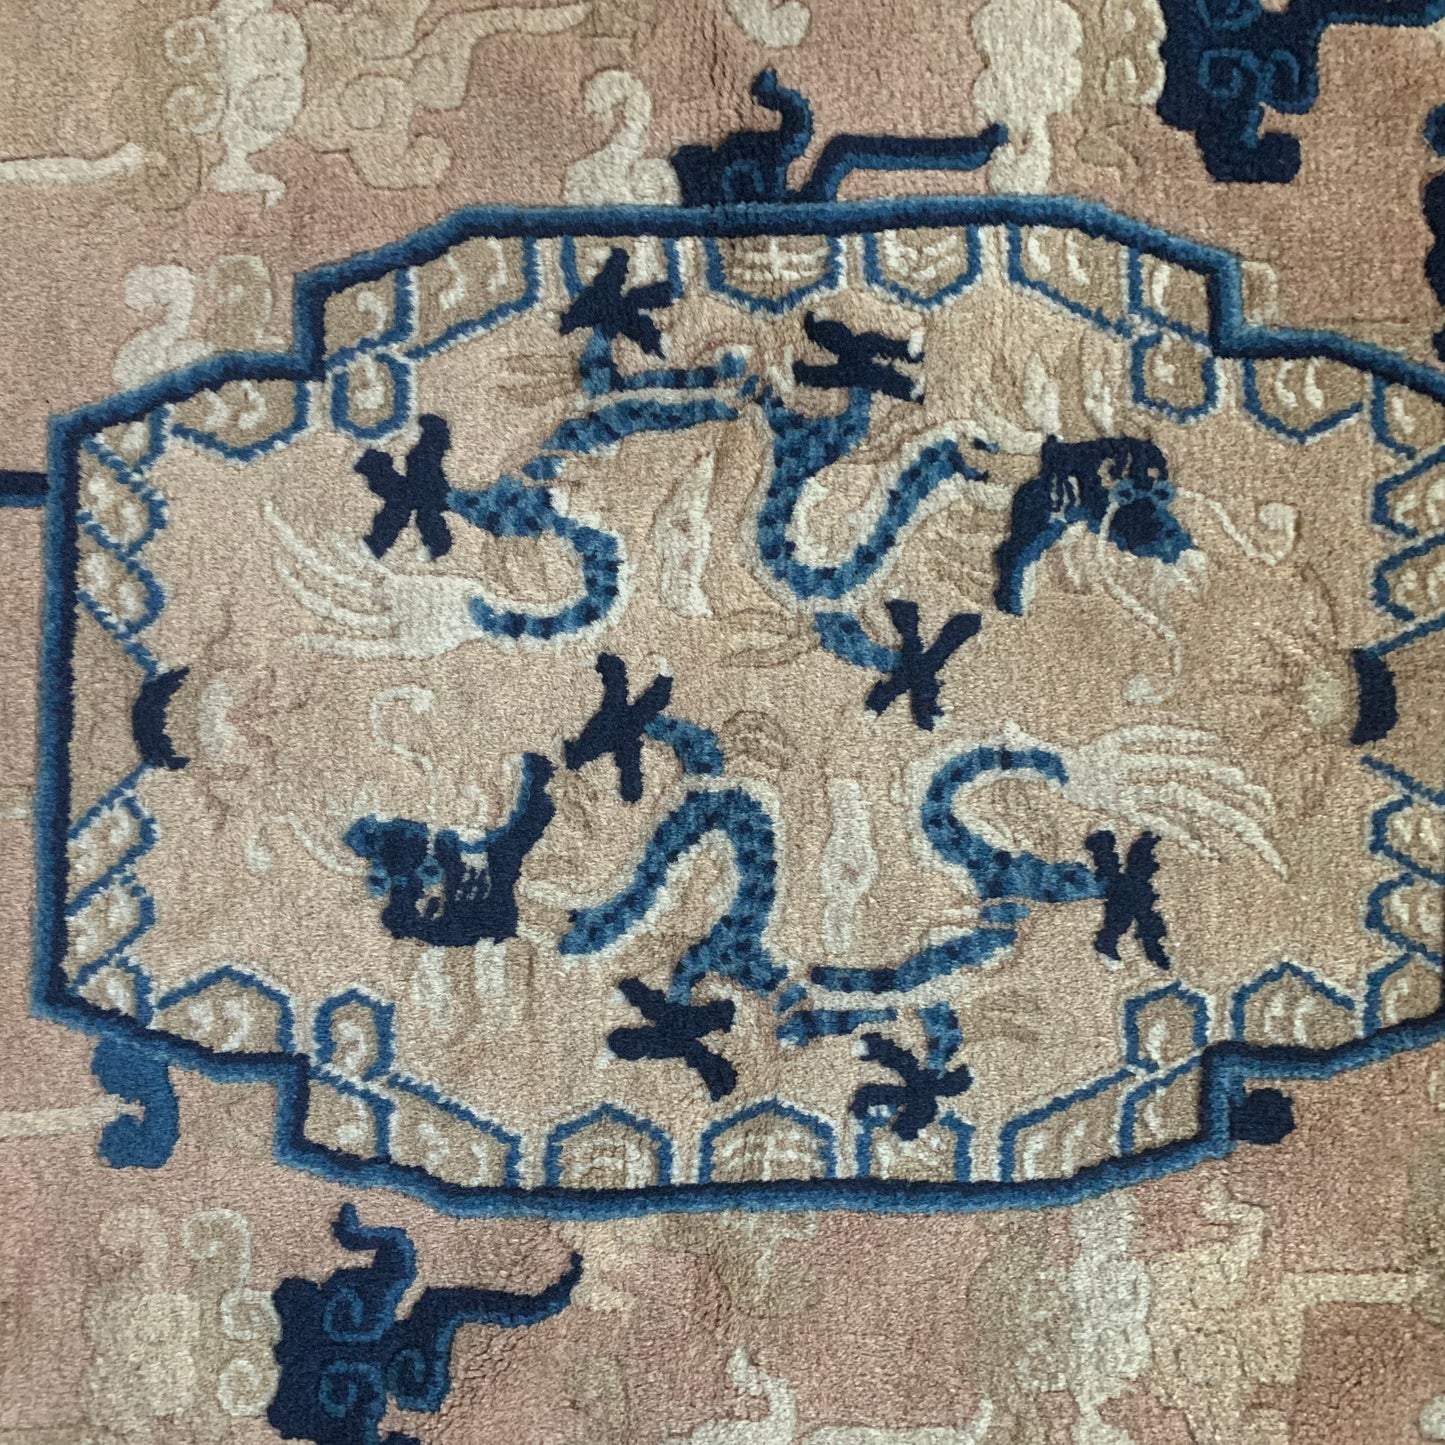 An antique ningxia dragon rug